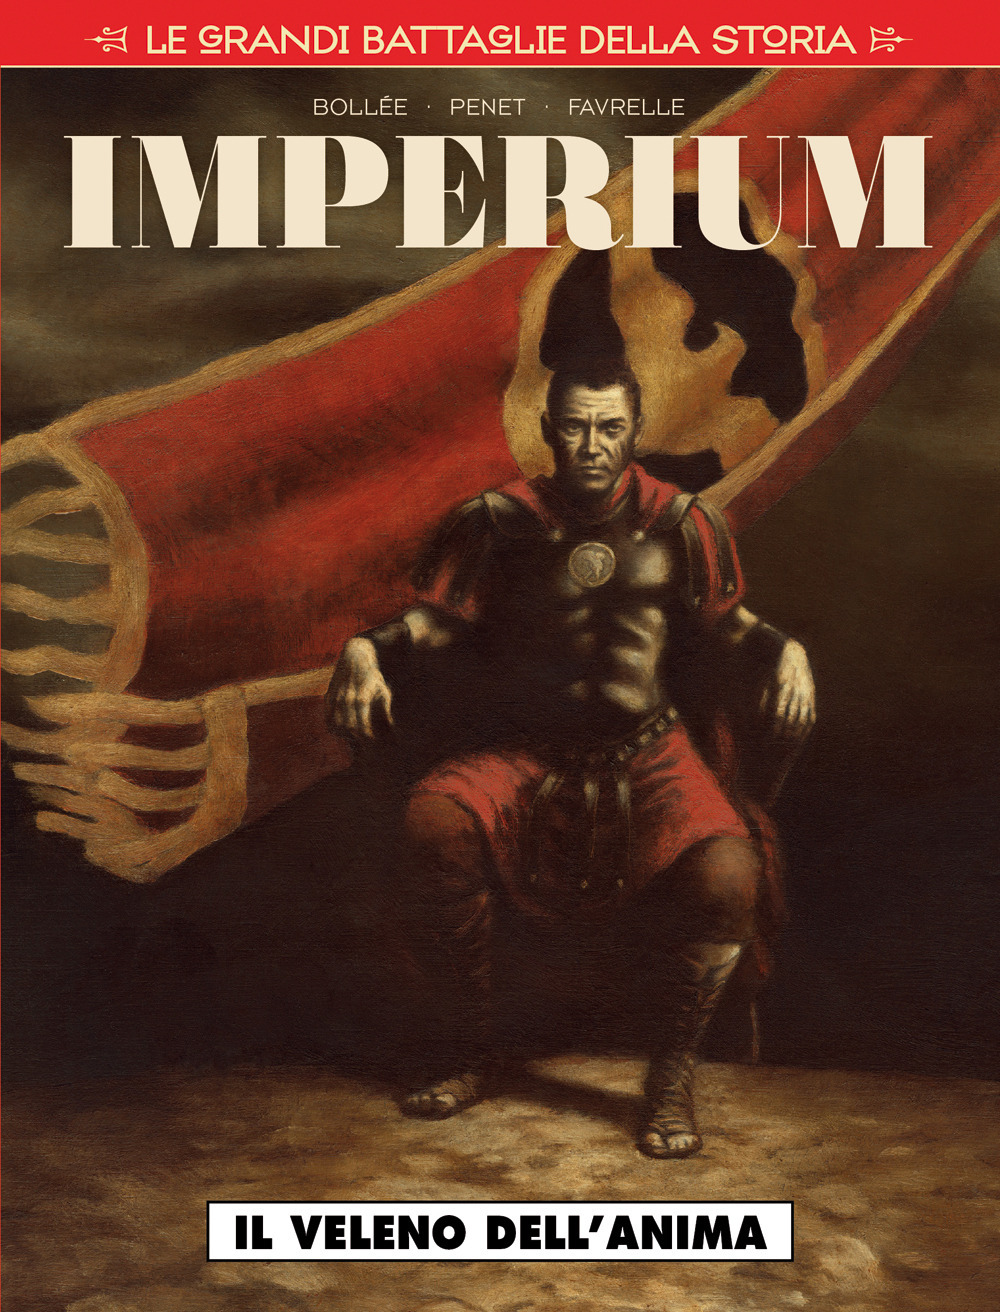 Le grandi battaglie della storia. Vol. 22: Il veleno dell'anima. Imperium